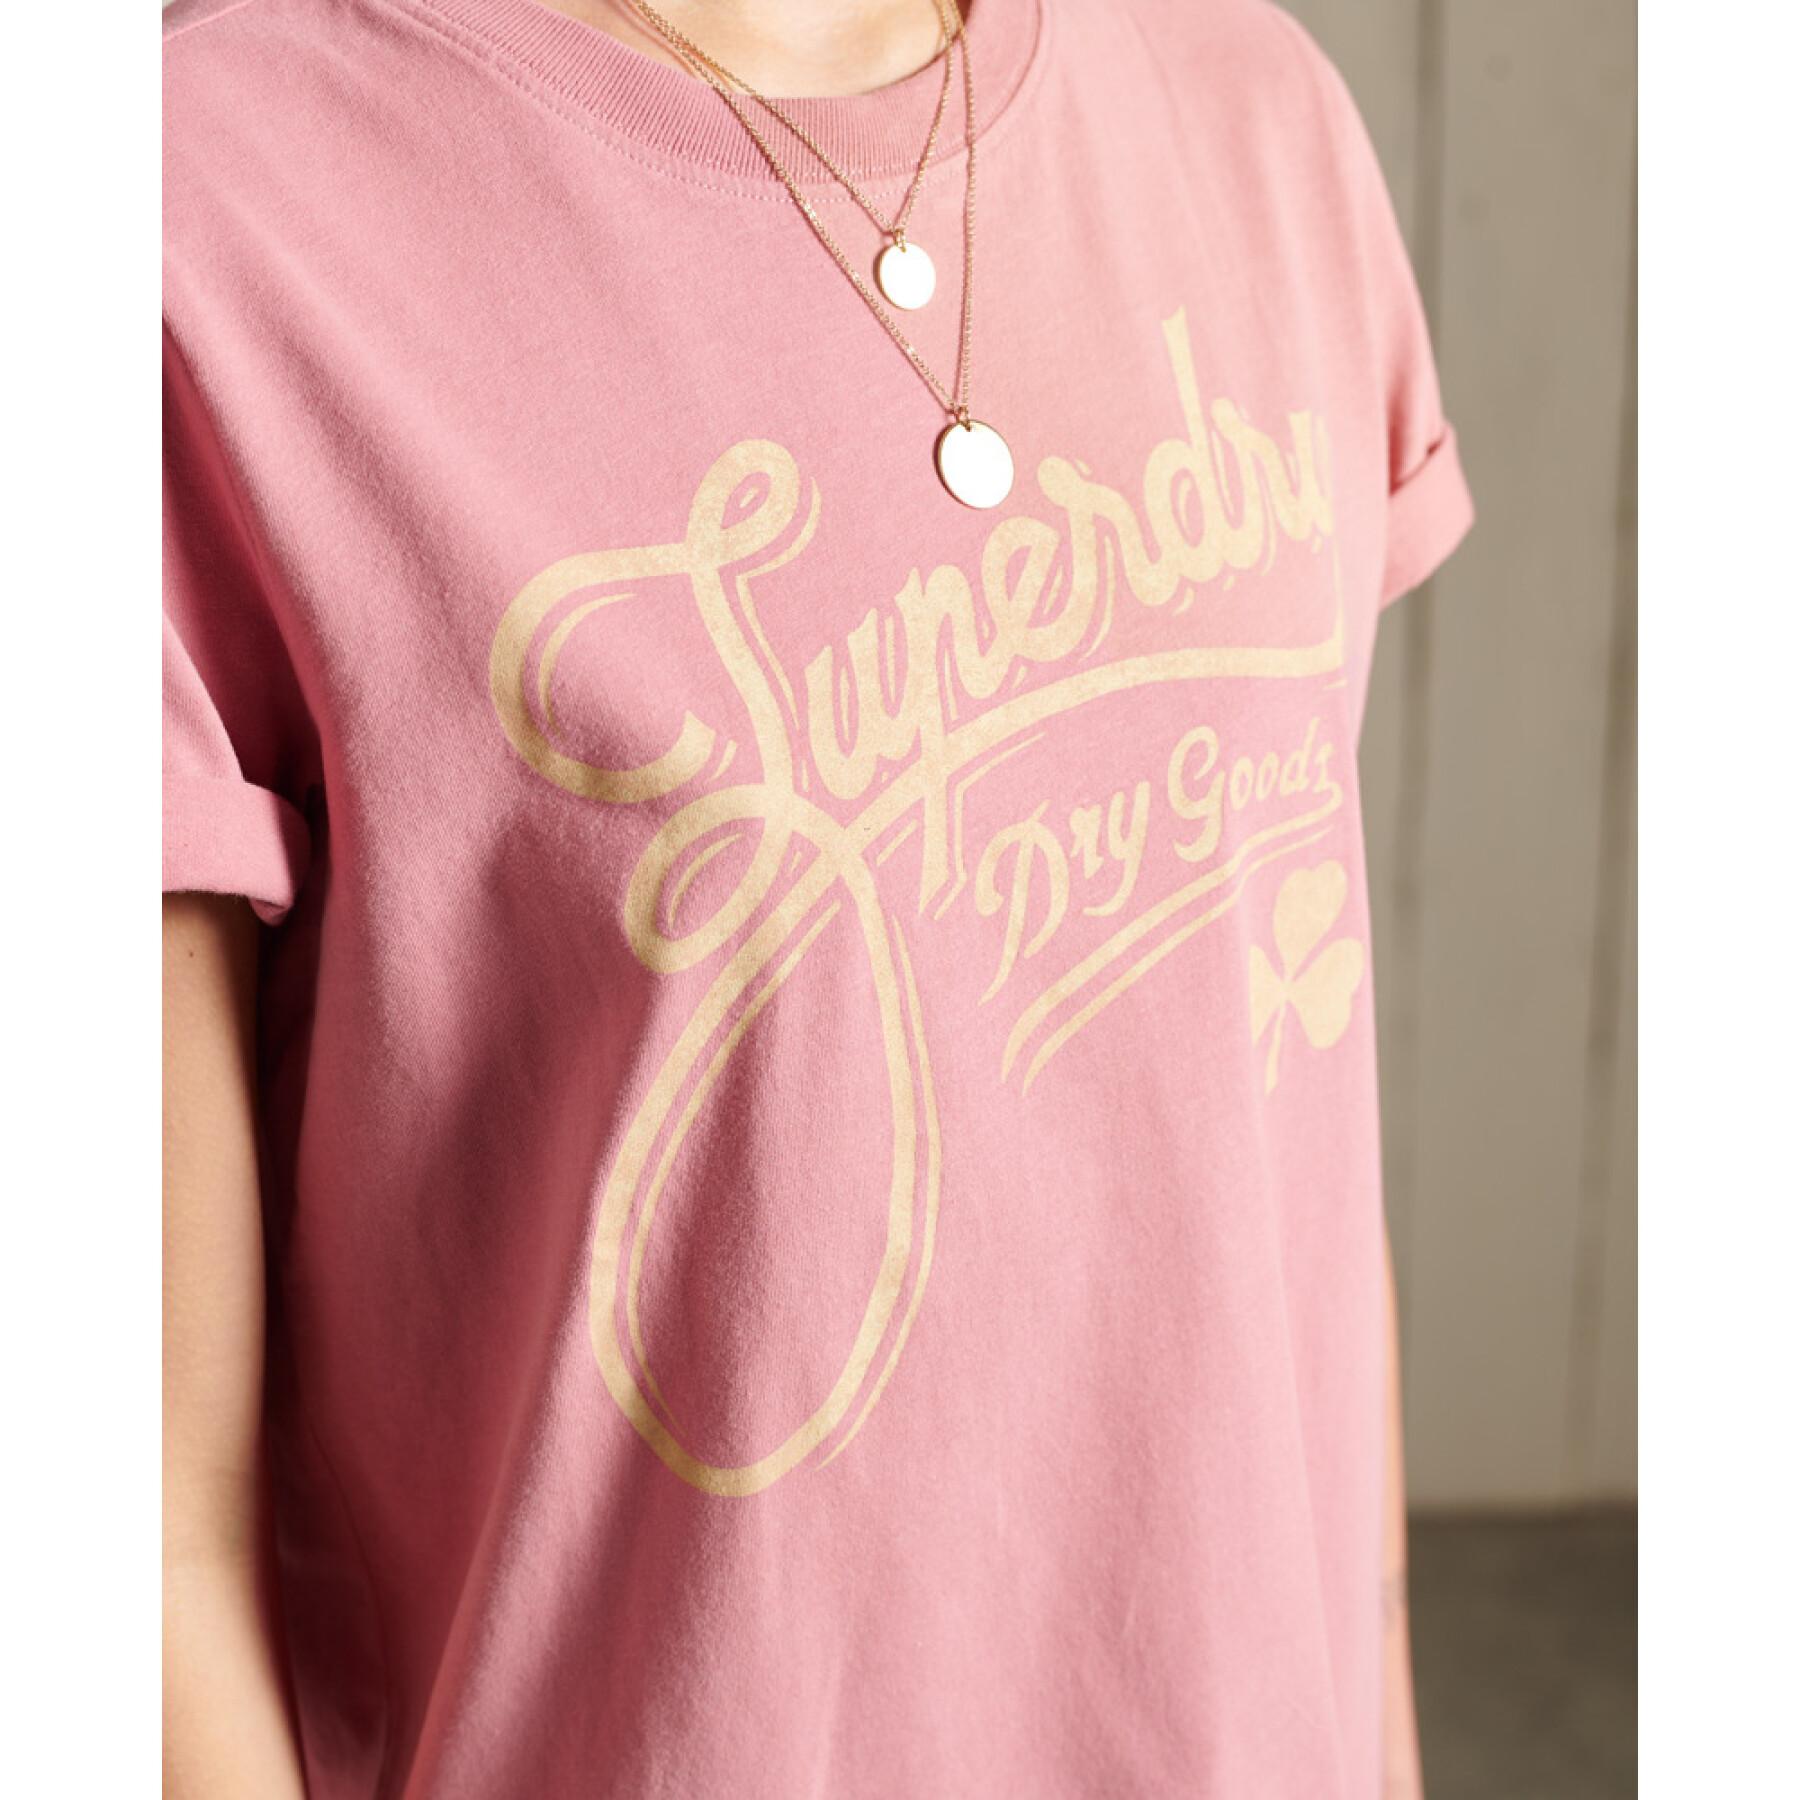 T-shirt för kvinnor Superdry Workwear